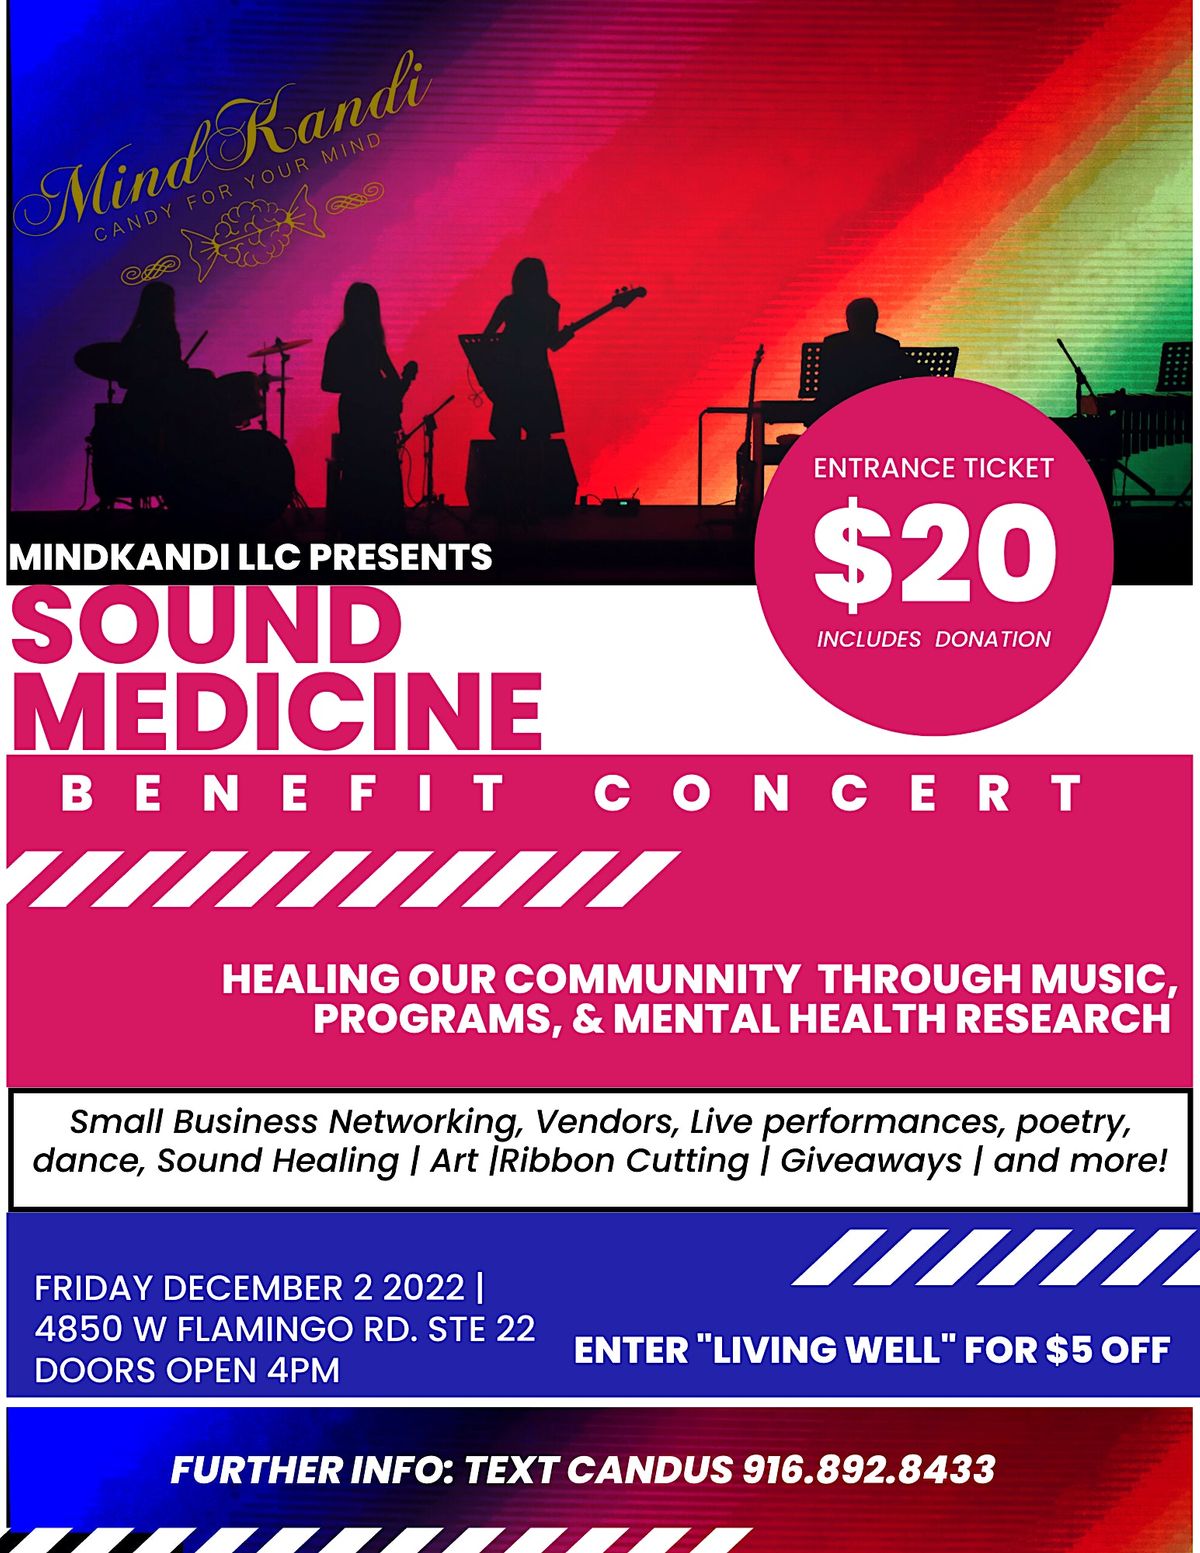 Mindkandi Presents Sound Medicine- A benefit concert